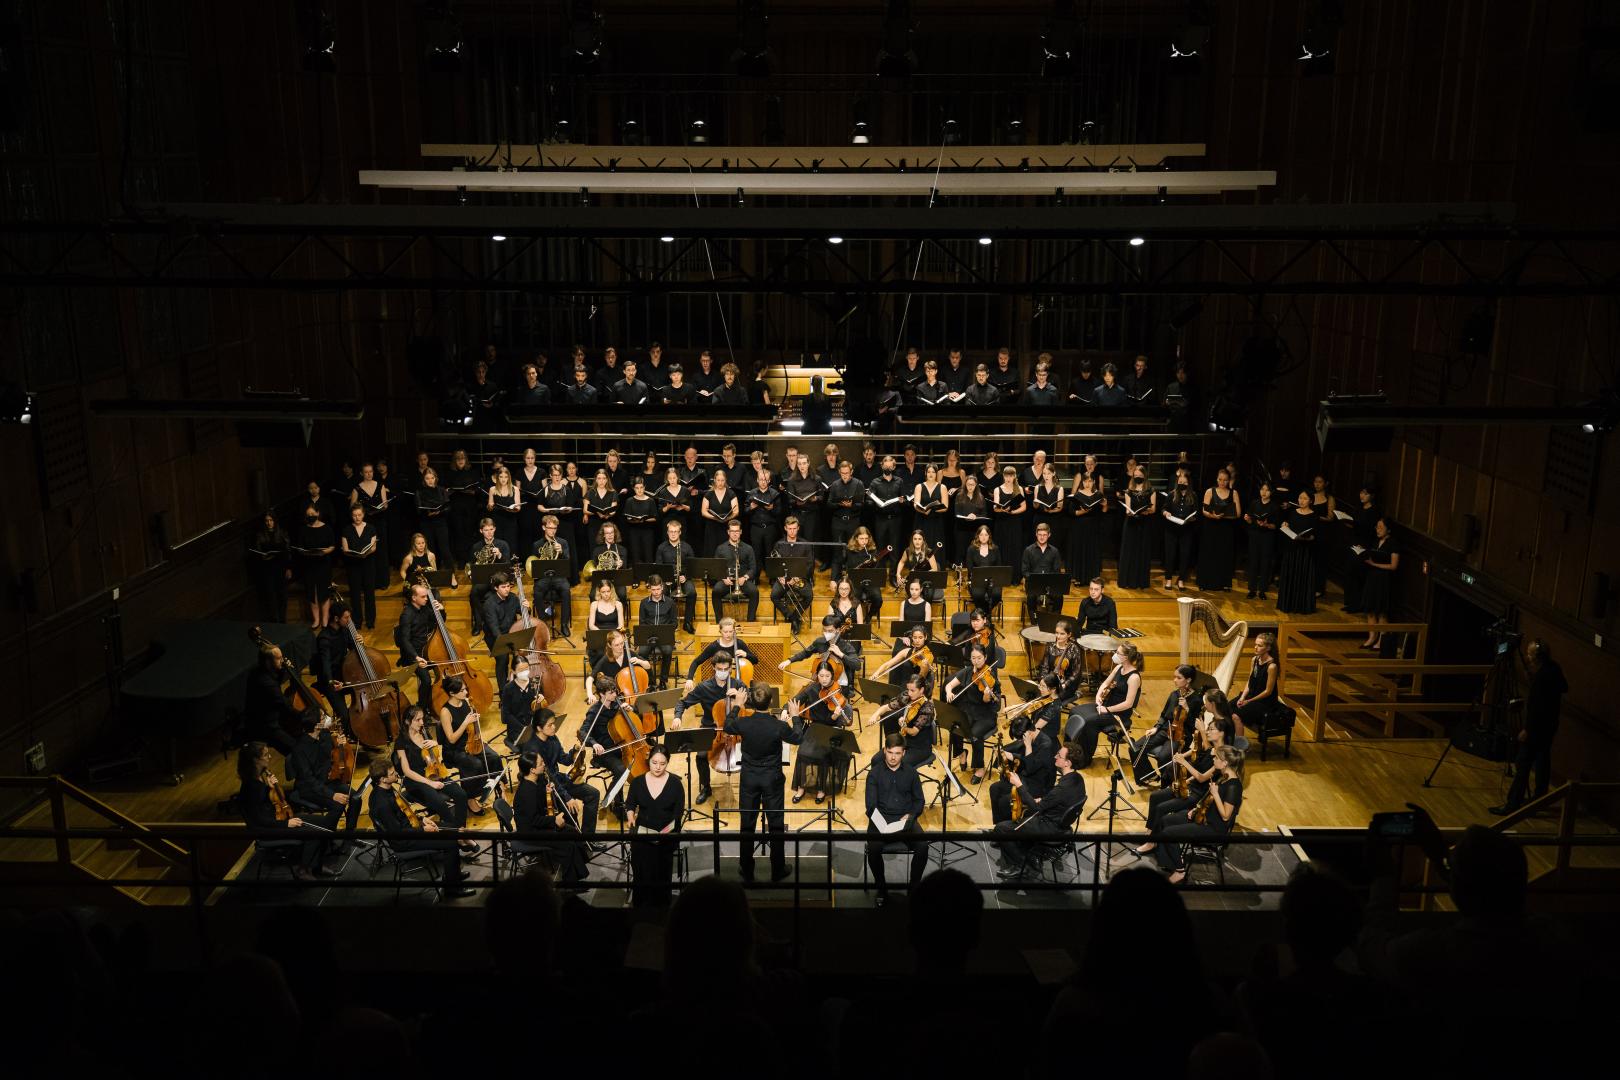 Konzertsituation des Hochschulchors gemeinsam mit dem Orchester der HfMDK im Großen Saal der Hochschule